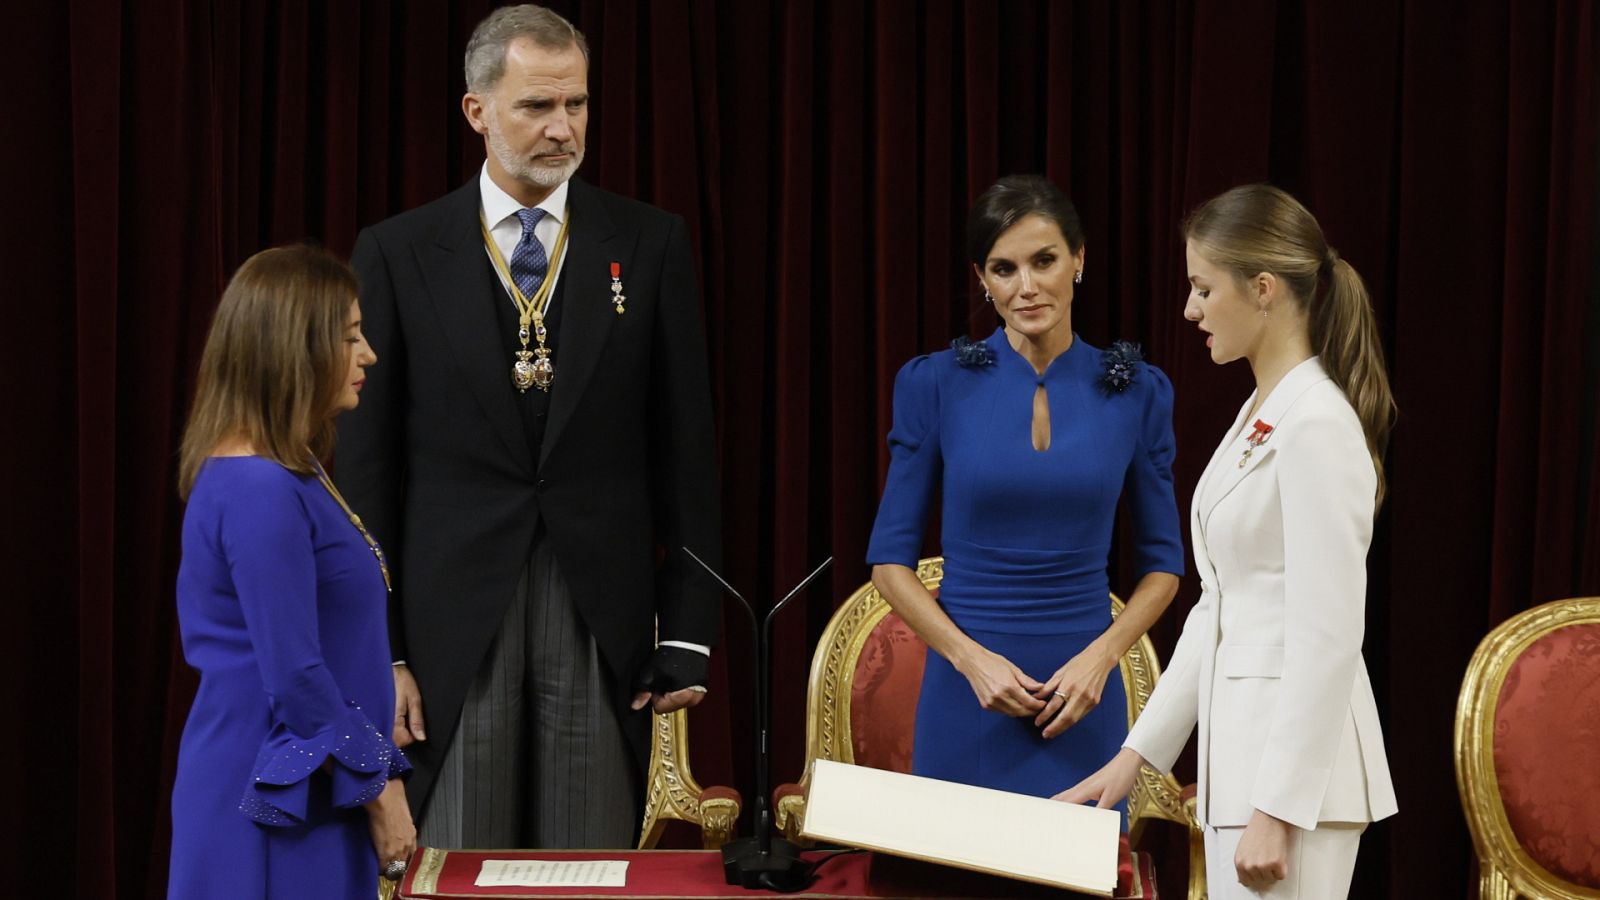 Especial informativo - Jura de la Constitución de S.A.R. la Princesa de Asturias